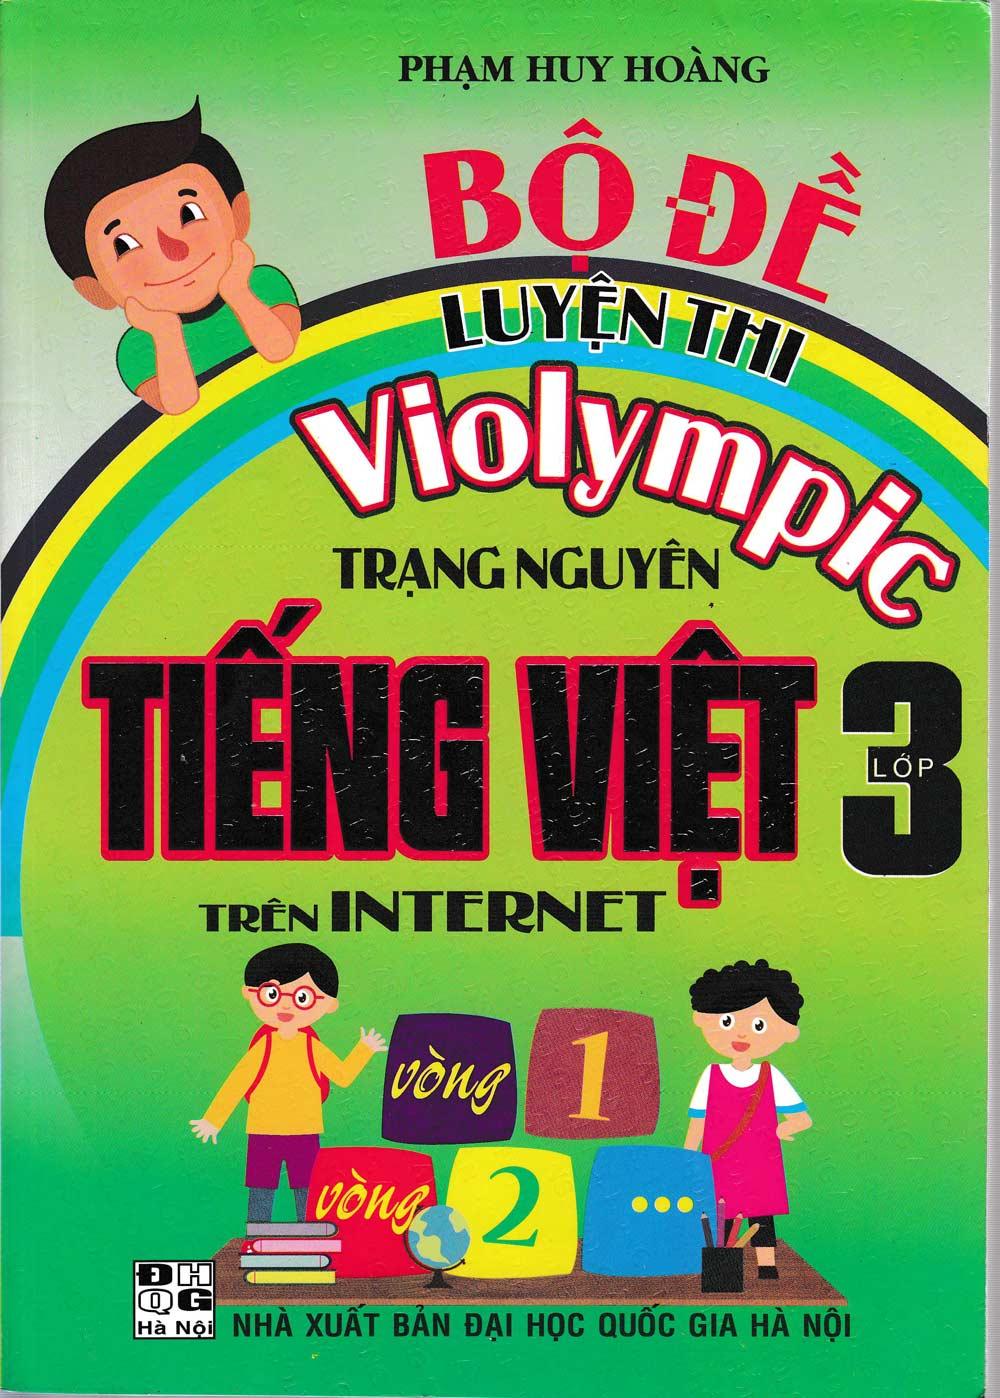 Bộ Đề Luyện Thi Violympic Trạng Nguyên Tiếng Việt Lớp 3 Trên Internet